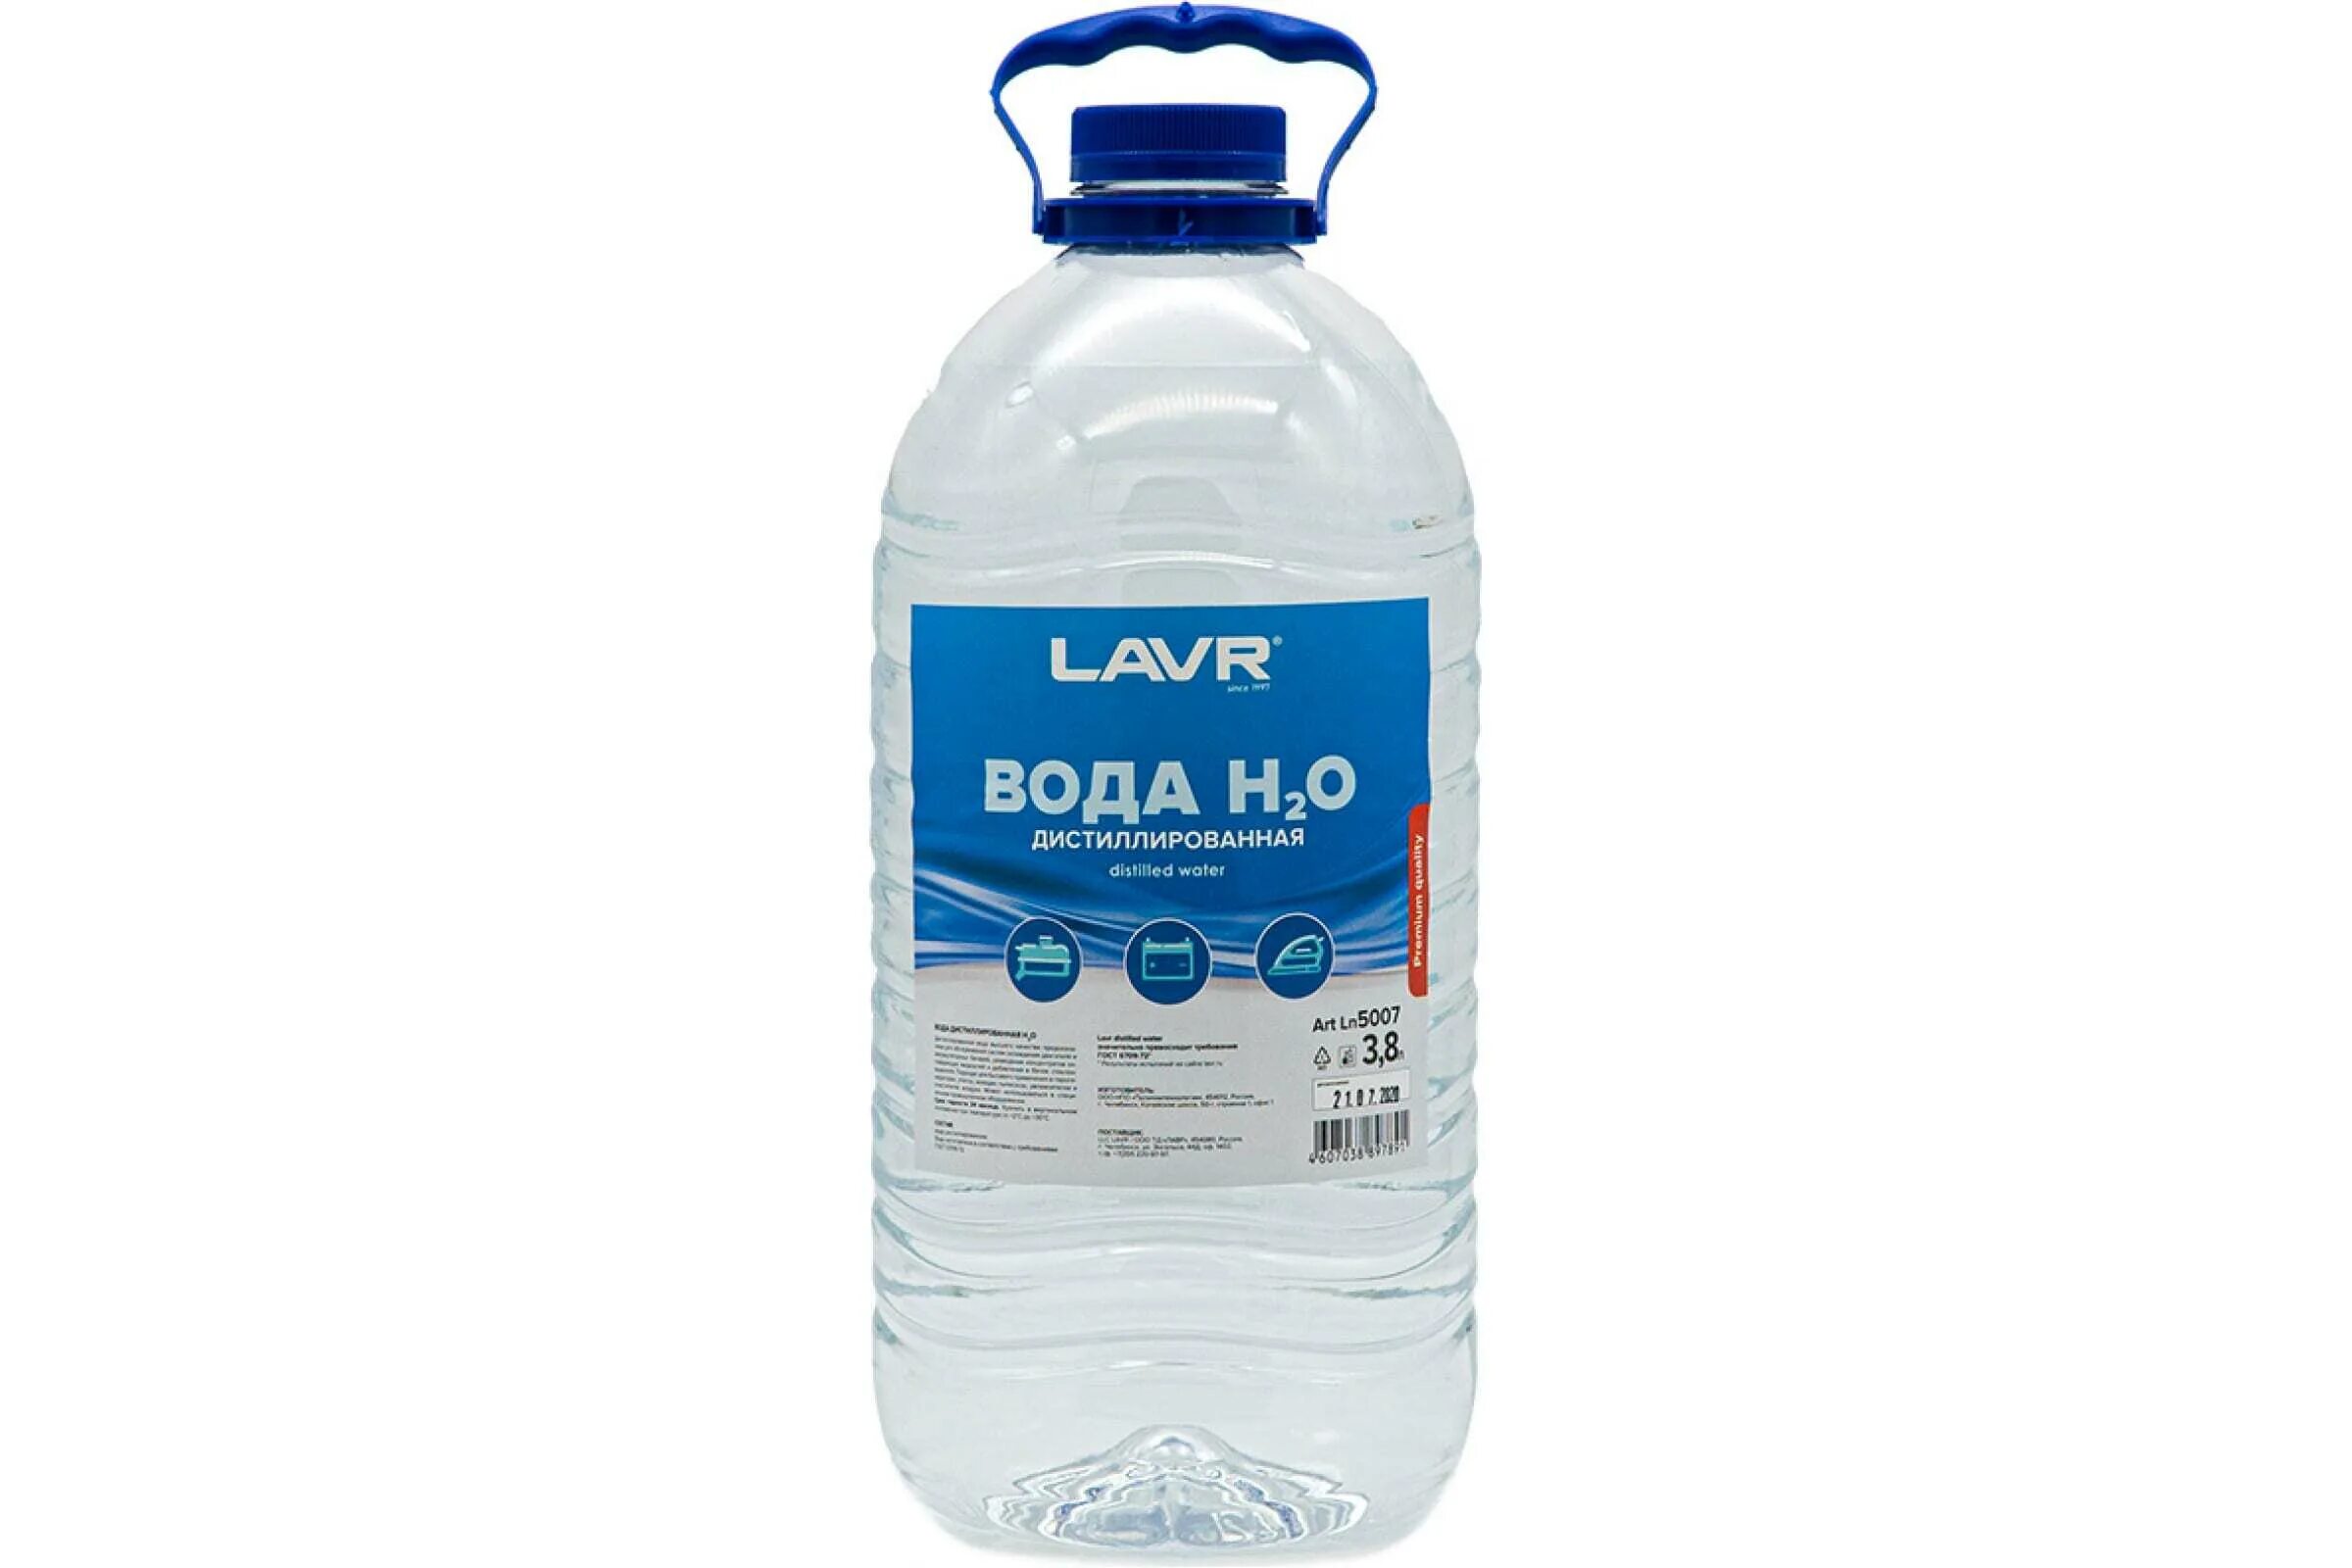 Дистиллированная вода 5 л артикул. LAVR вода дистиллированная 5л артикул. Ln5001 LAVR вода дистиллированная LAVR 1л. Ln5007.